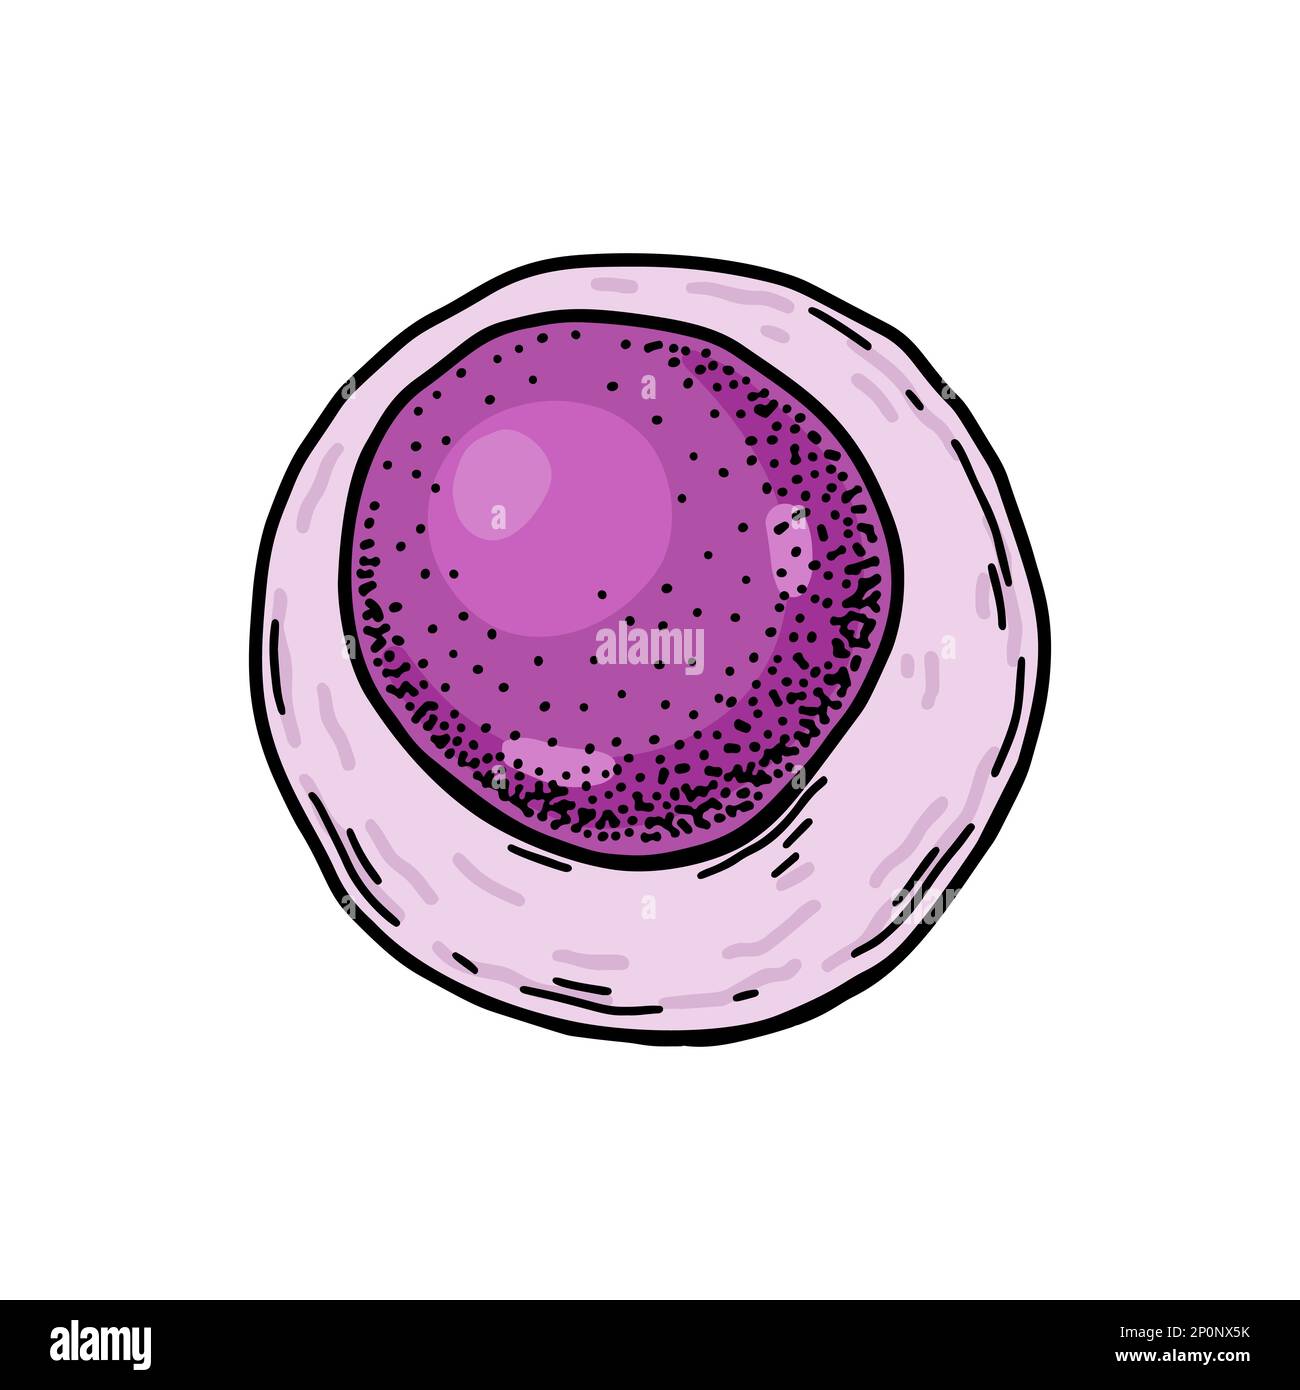 Cellules souches de sang lymphoïde isolées sur fond blanc. Illustration de vecteur de microbiologie scientifique dessiné à la main dans un style d'esquisse Illustration de Vecteur